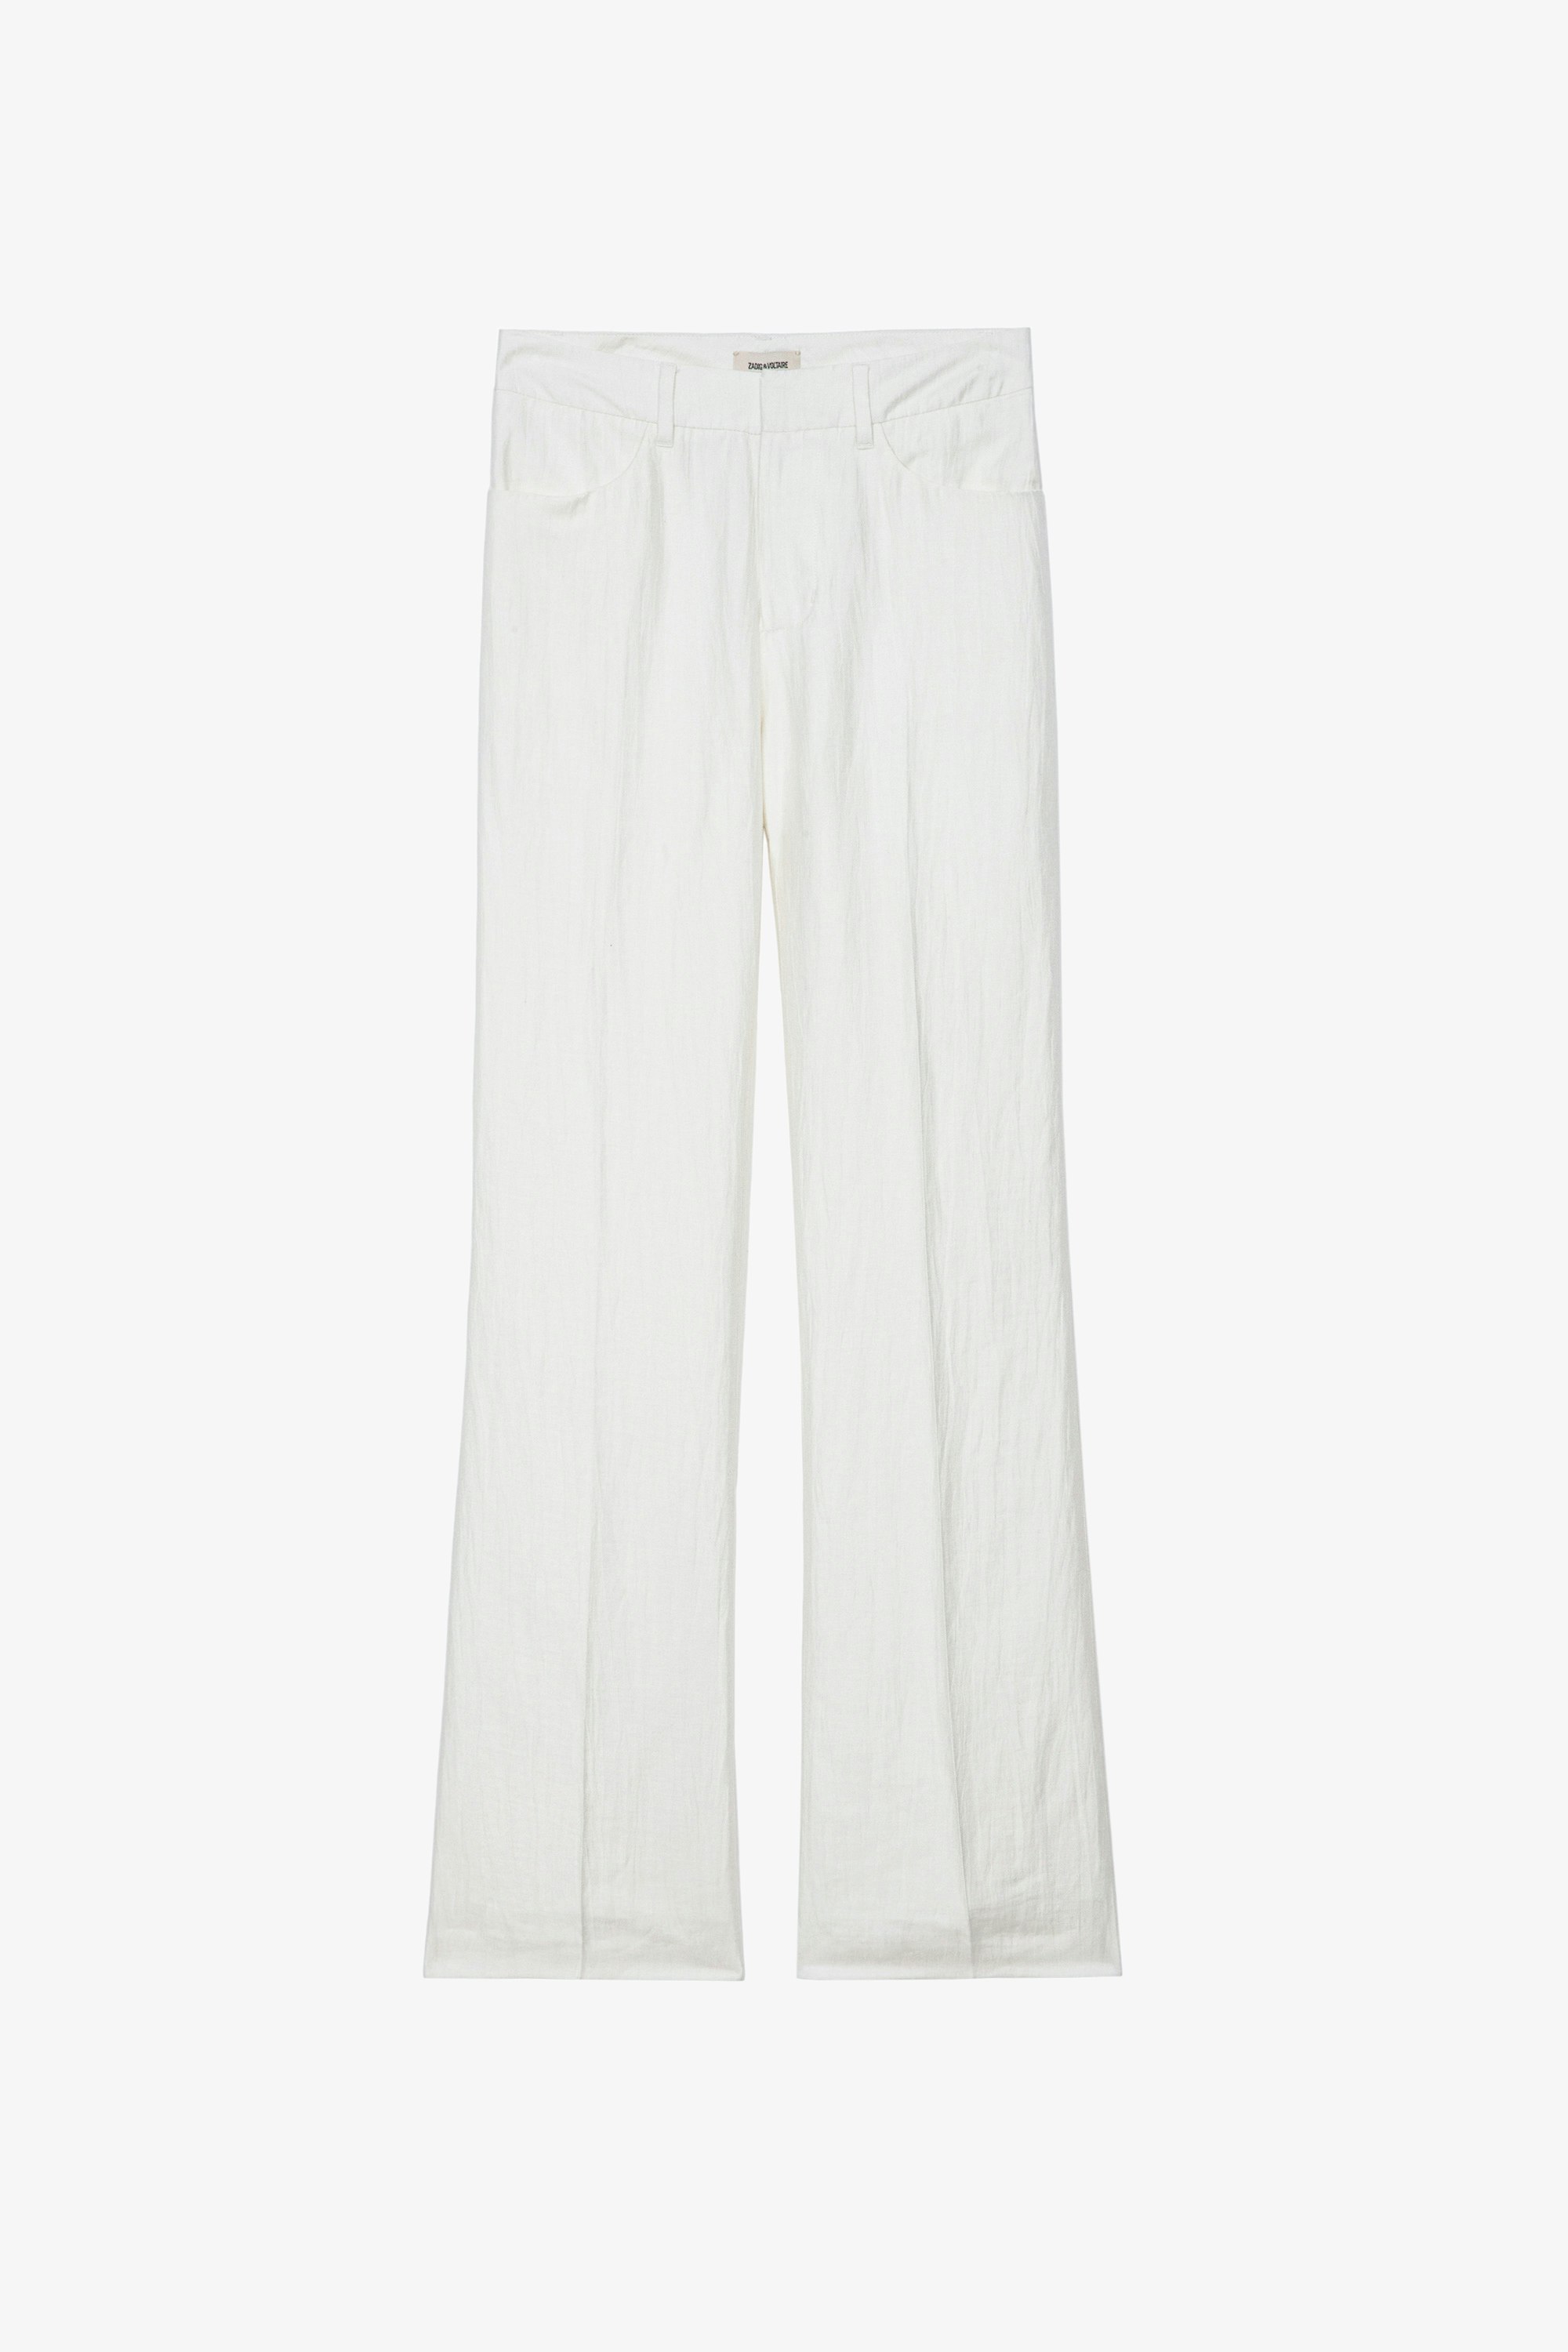 Pantalon Pistol - Pantalon de tailleur évasé en lin blanc à poches et plis.